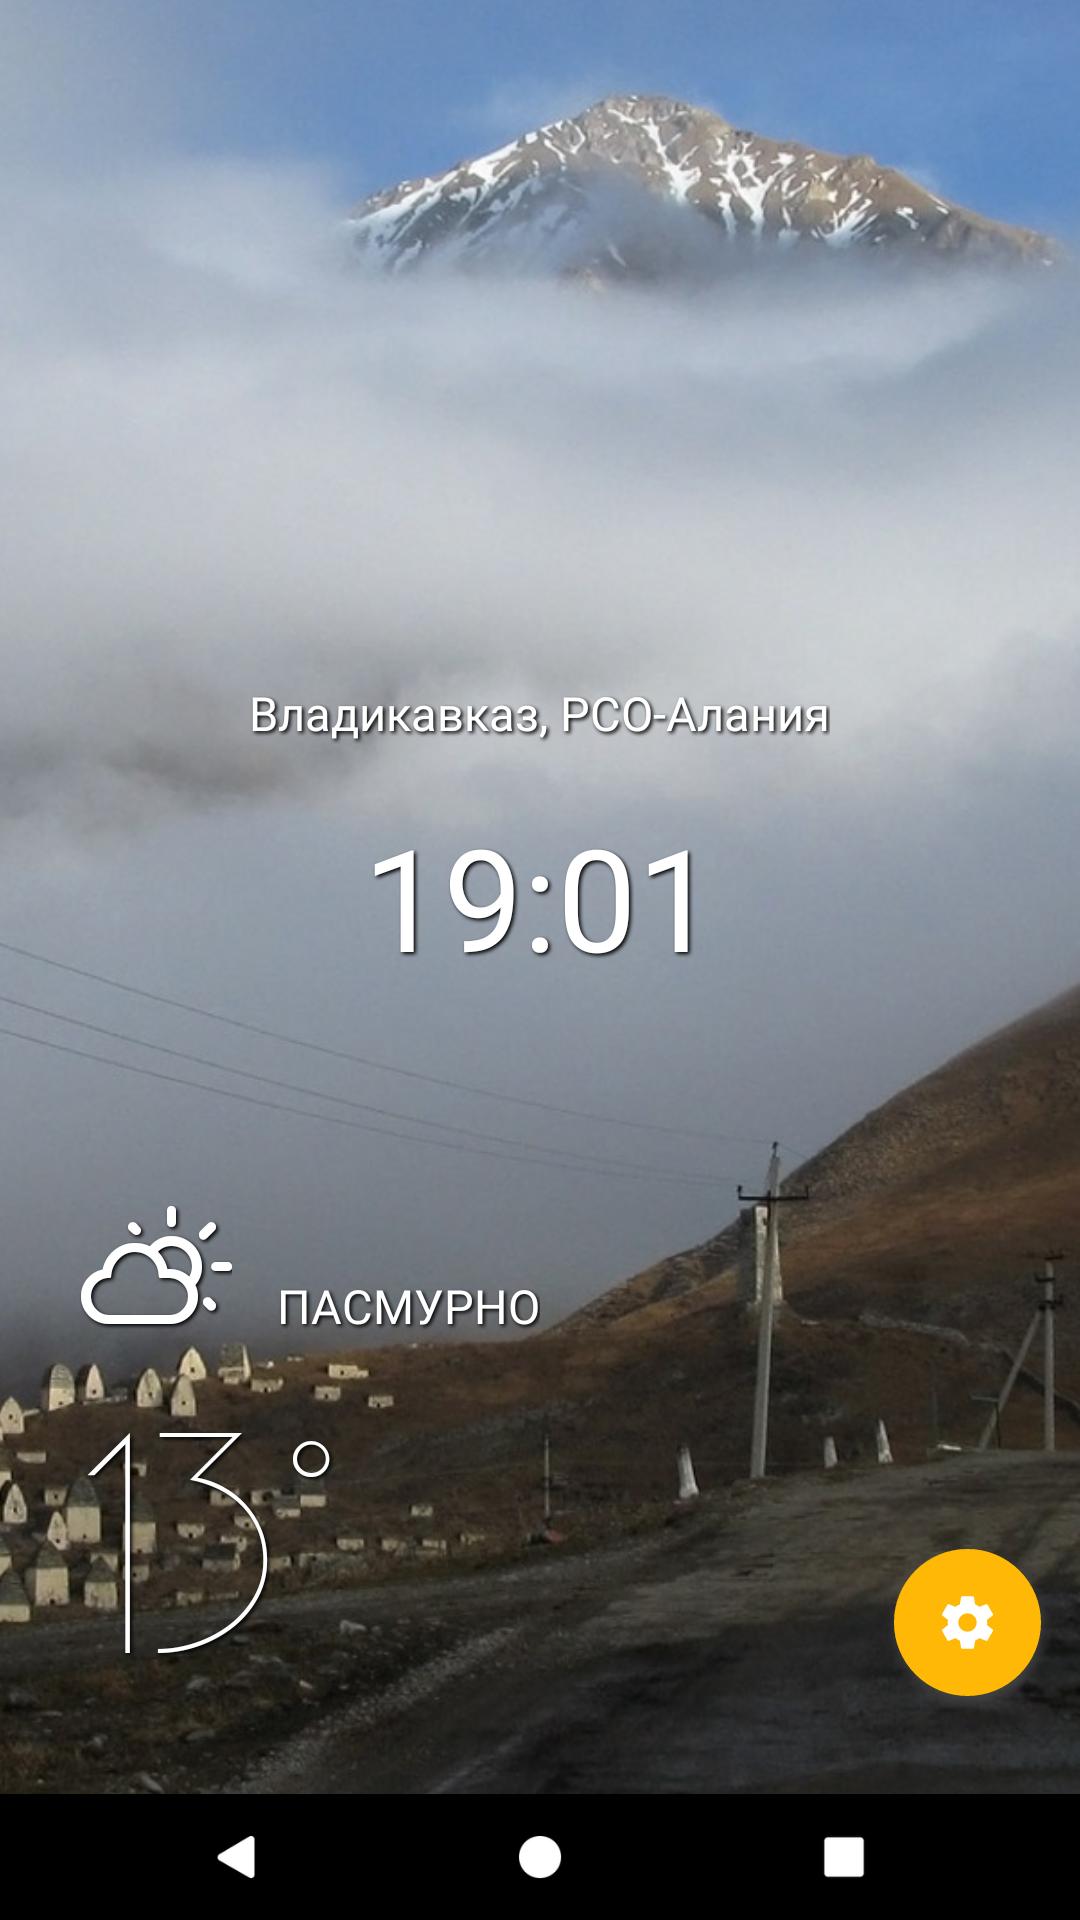 Прогноз погоды во владикавказе на сегодня точный. Погода во Владикавказе. Прогноз погоды во Владикавказе. Погода во Владикавказе на 10 дней. Погода во Владикавказе на завтра.